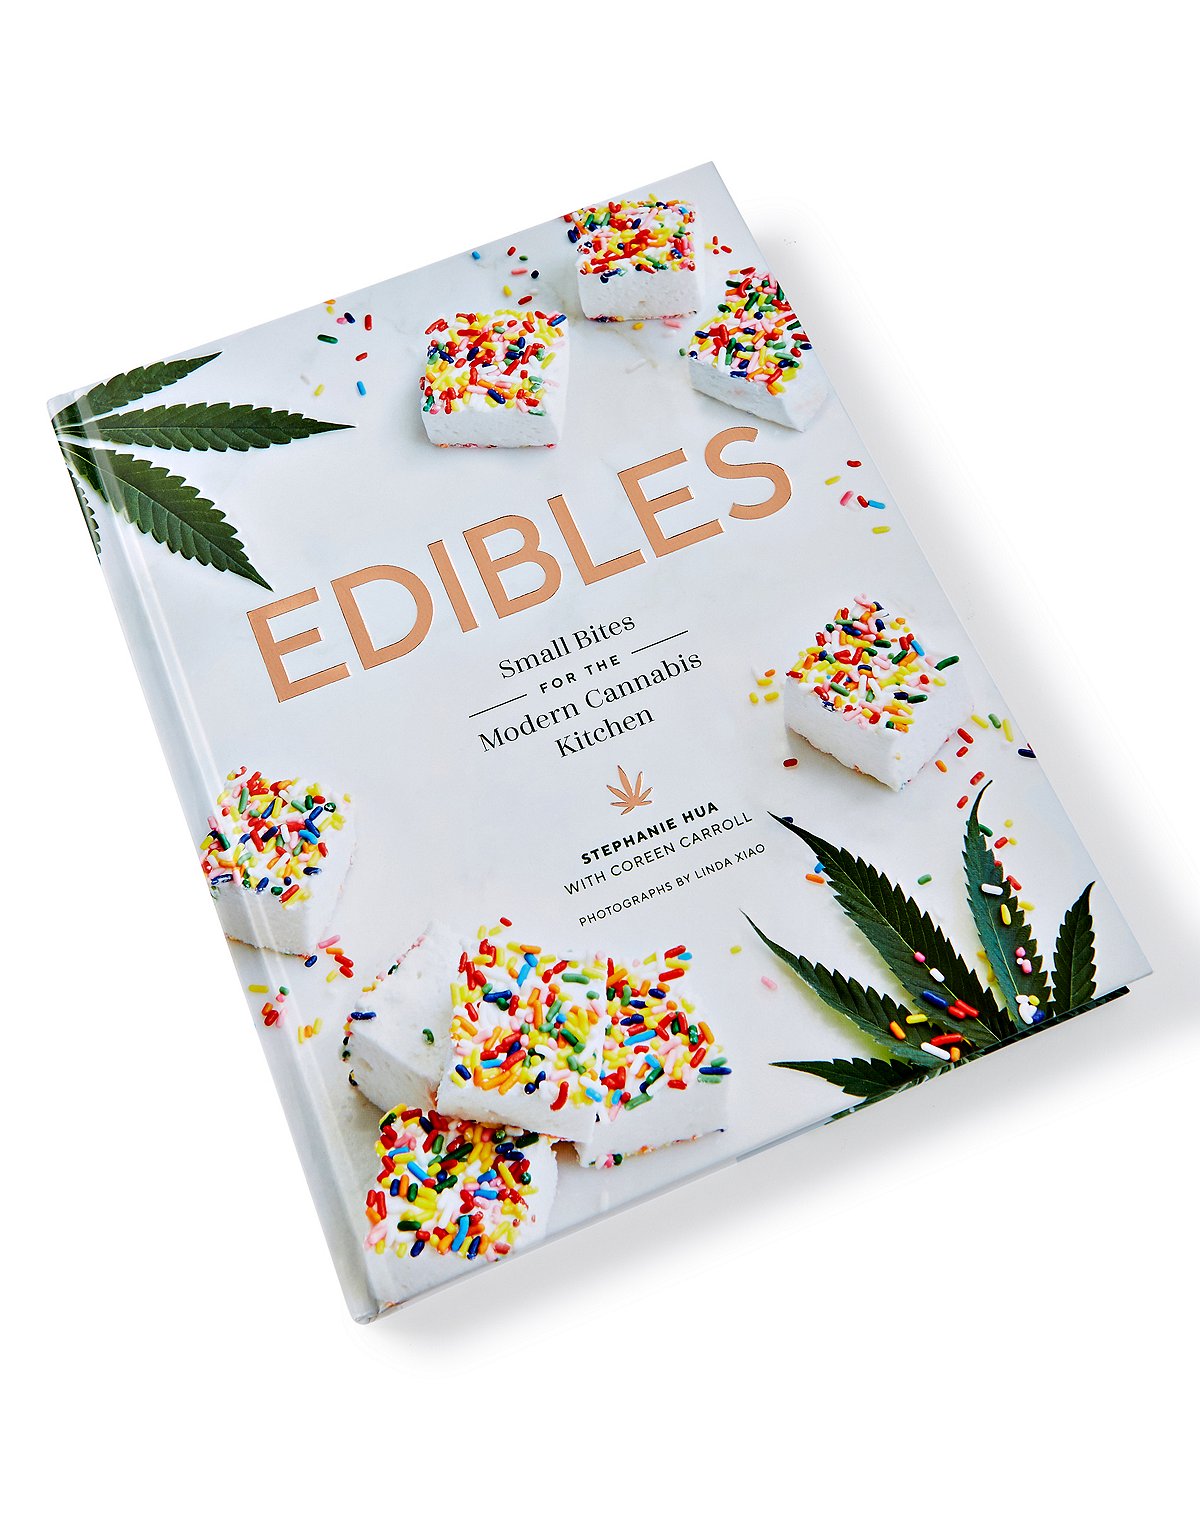 Small Bites Edibles Cookbook